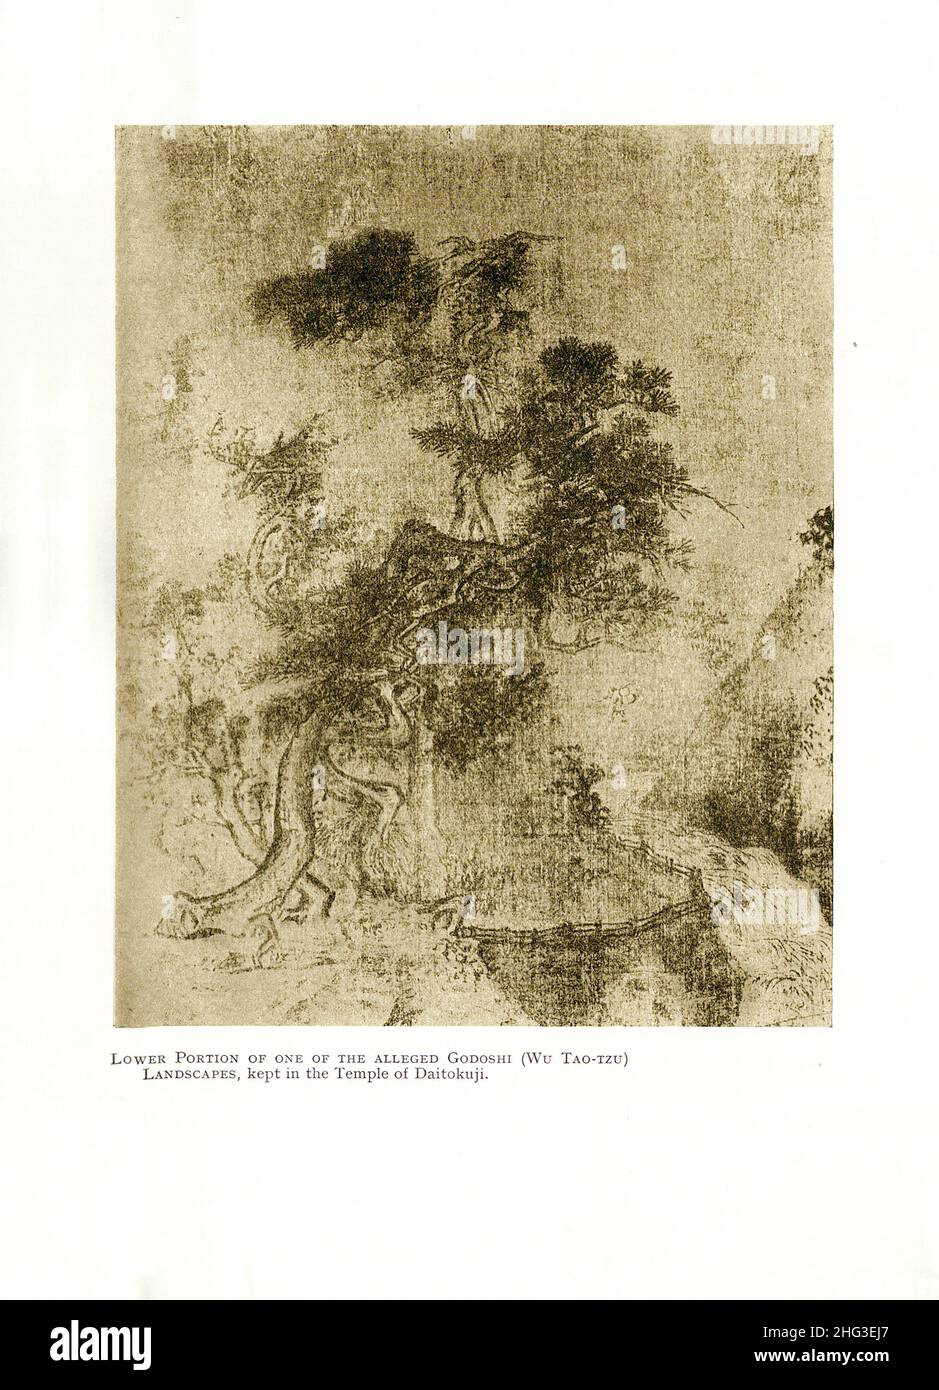 Kunst von China, Northern Song. Unterer Teil eines der angeblichen Godoshi (Wu Tao-Tzu). Vintage Landschaften, gehalten im Tempel von Daitoku-ji (Tempel von Stockfoto